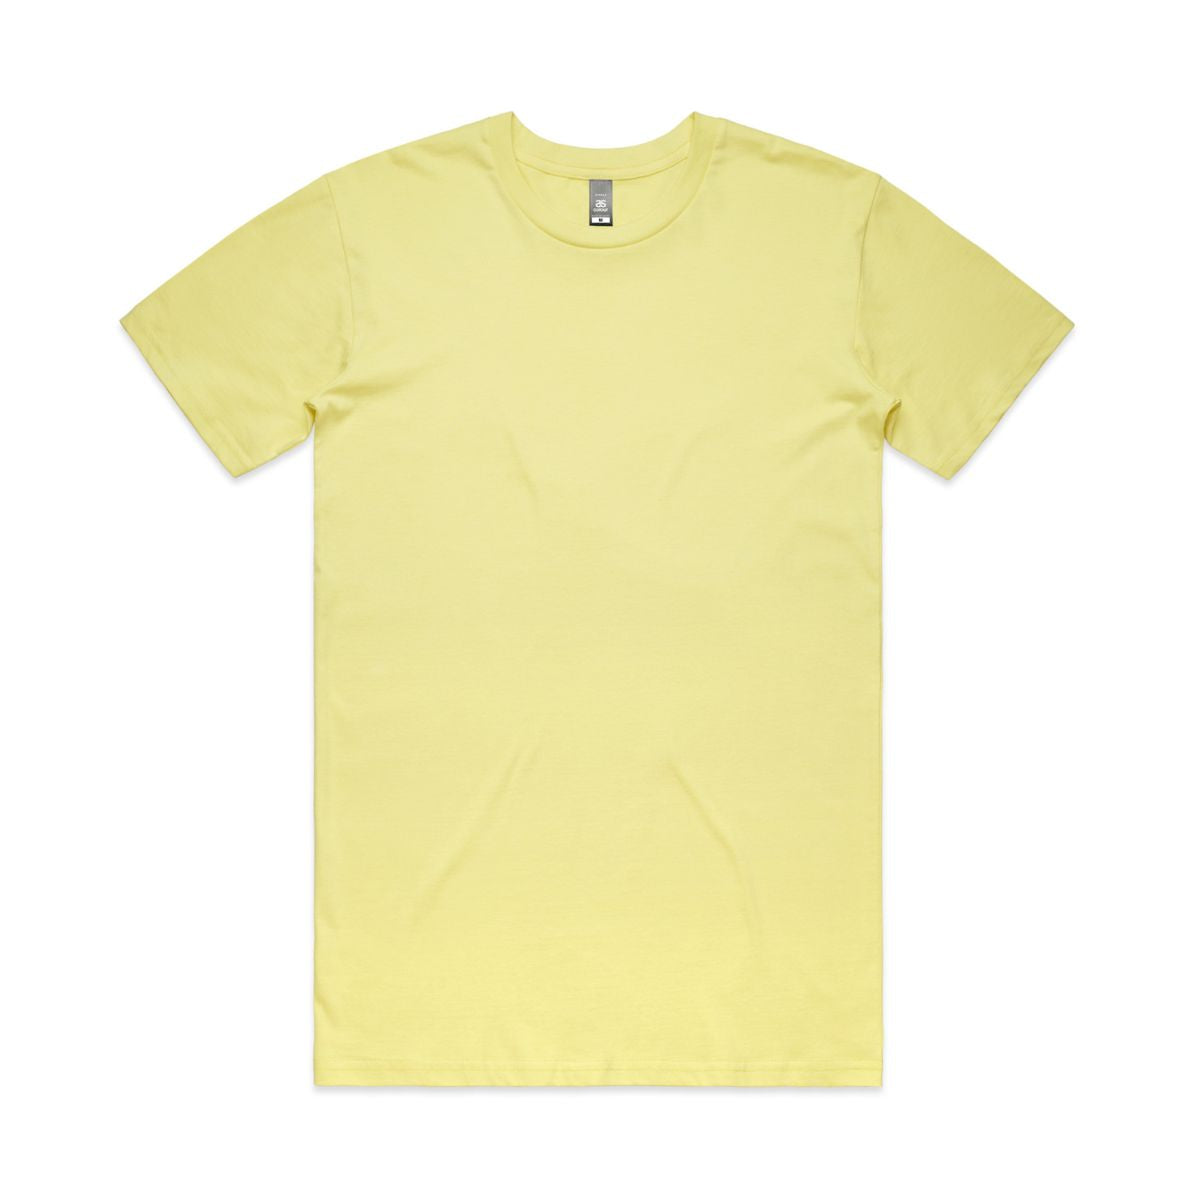 ascolour Men's Staple Tee - Yellow Shades 5001